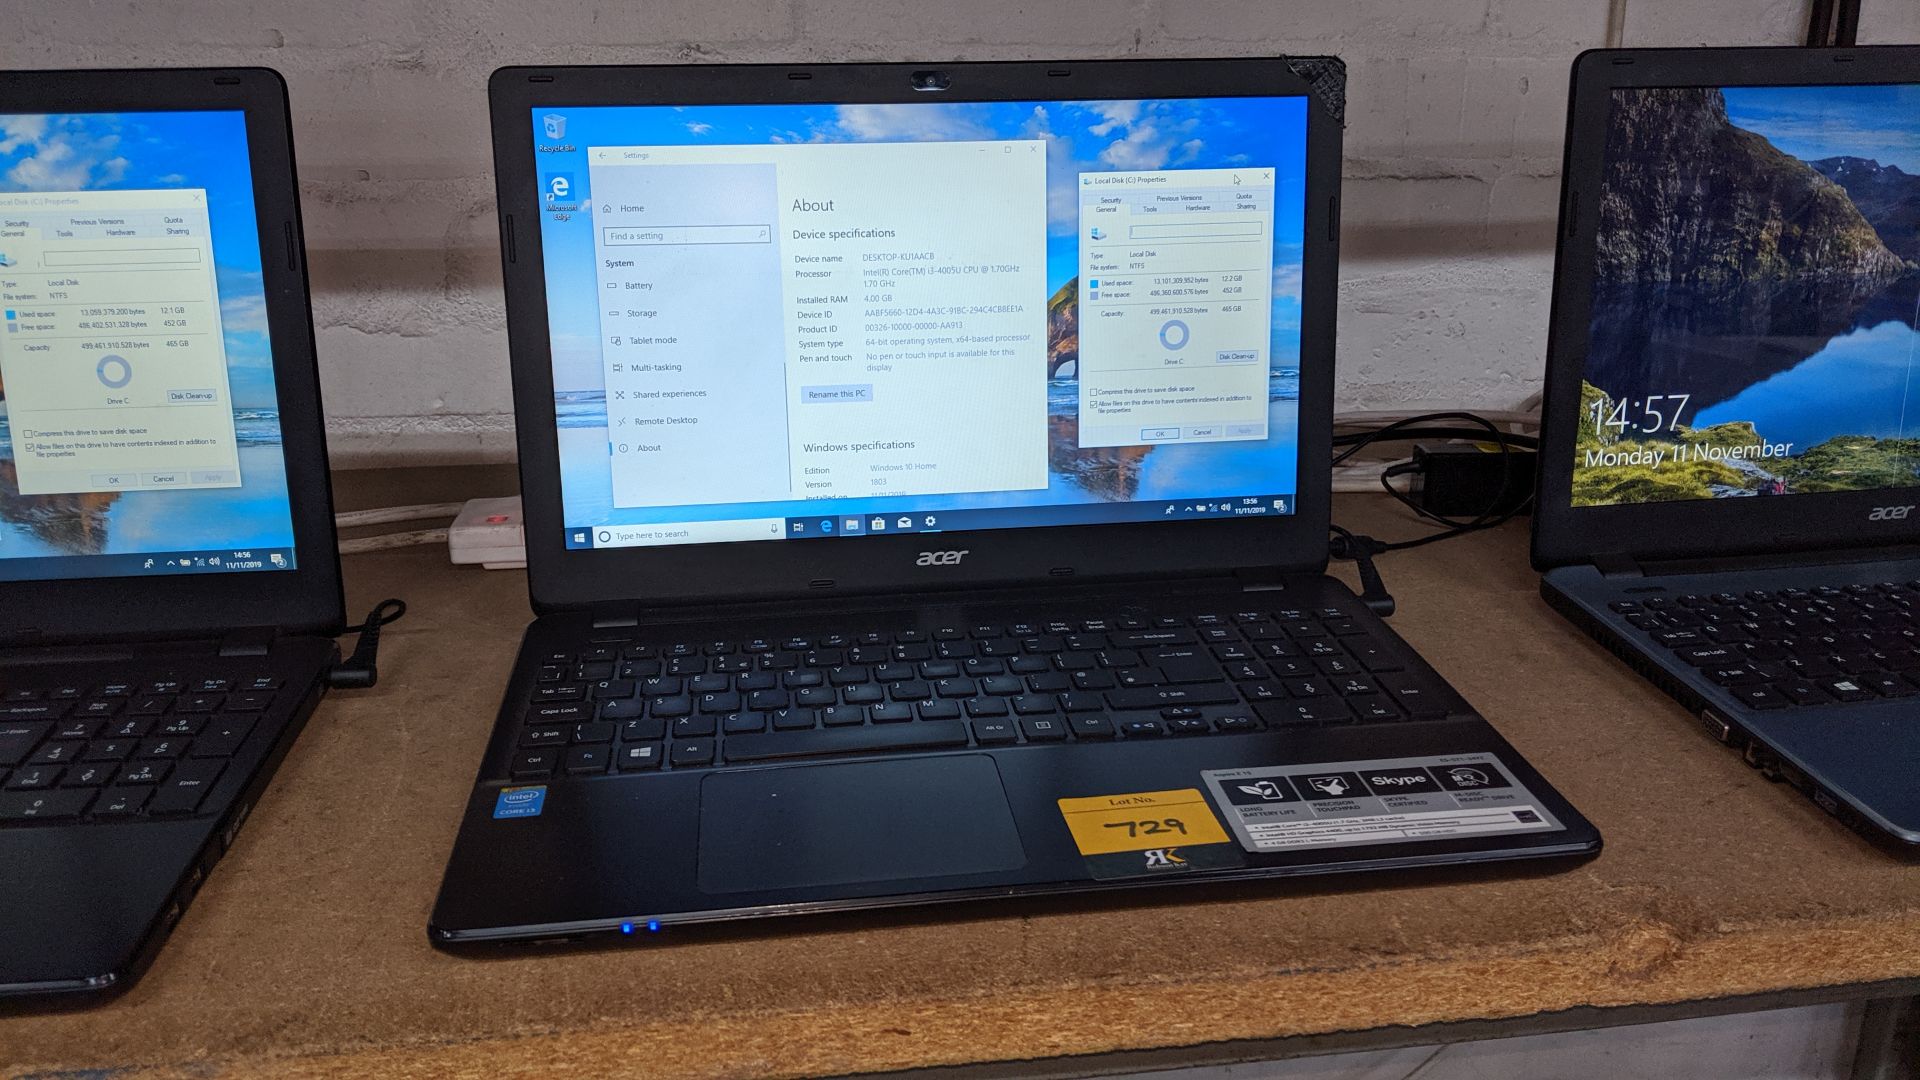 Acer Aspire E15 widescreen notebook computer, Intel Core i3-4005u CPU @1.7GHz, 4Gb RAM, 500Gb HDD